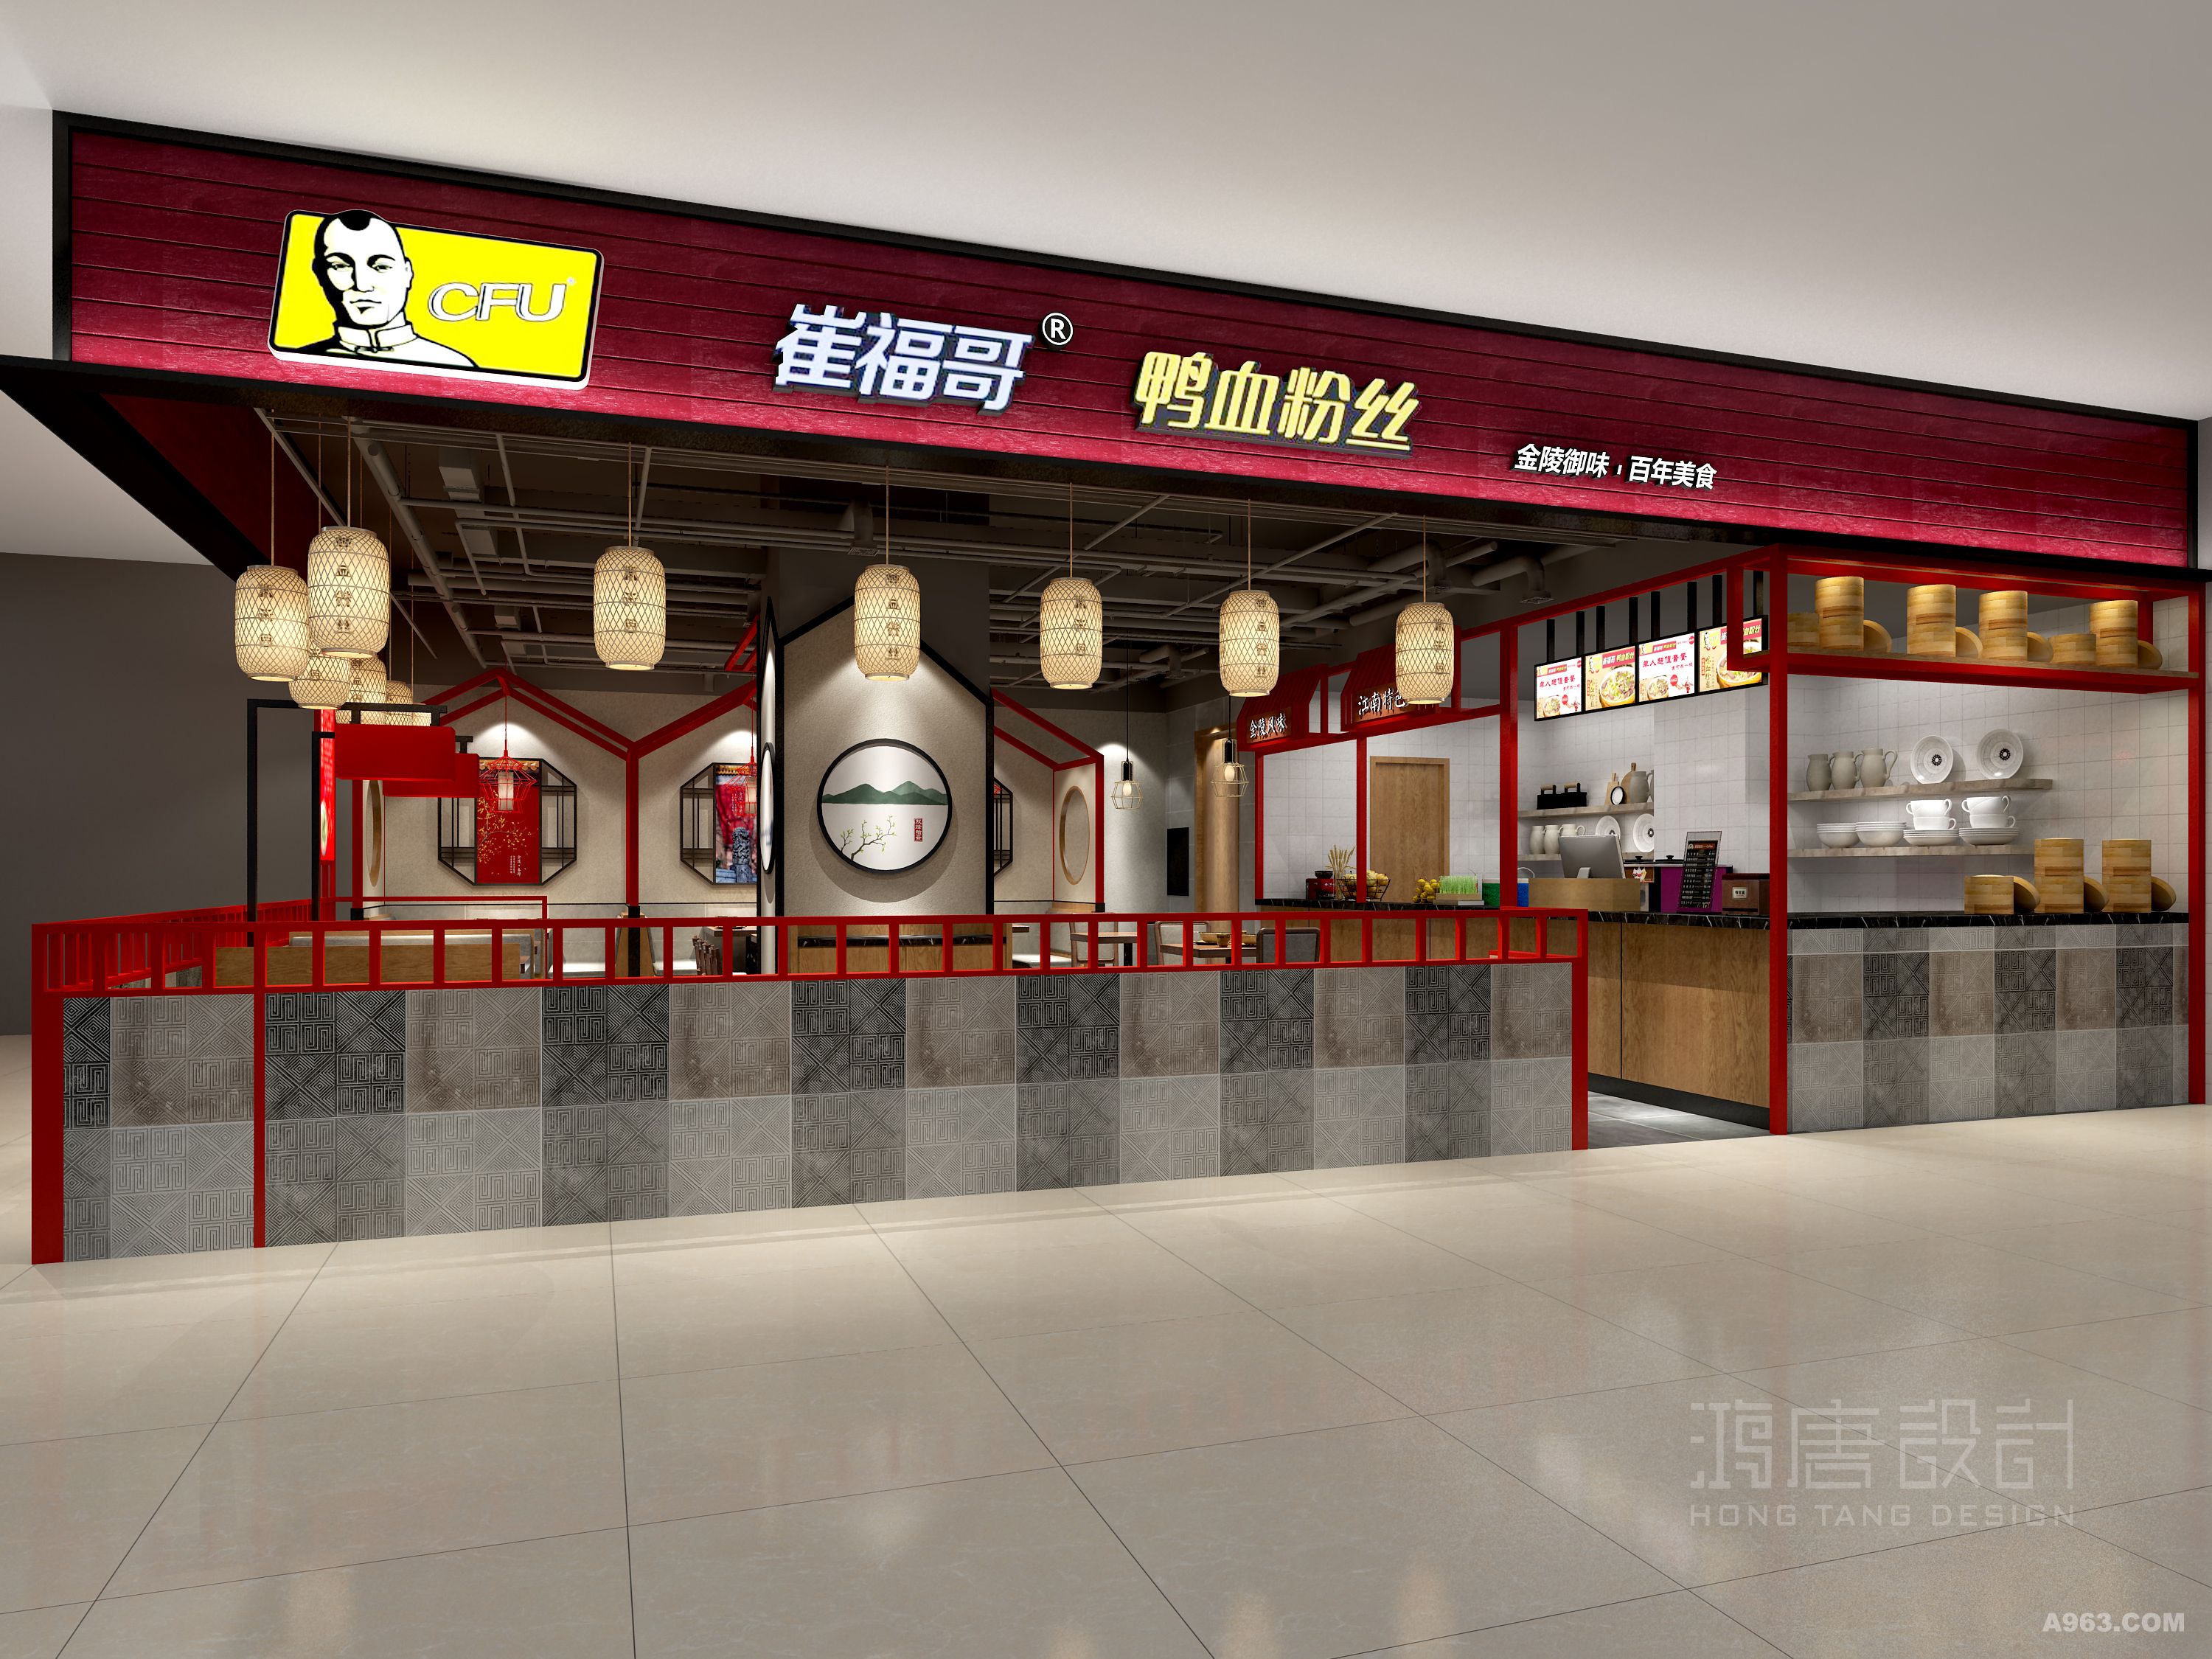 崔福哥鸭血粉丝是一家知名连锁品牌餐厅，以南京鸭血粉丝为特色，